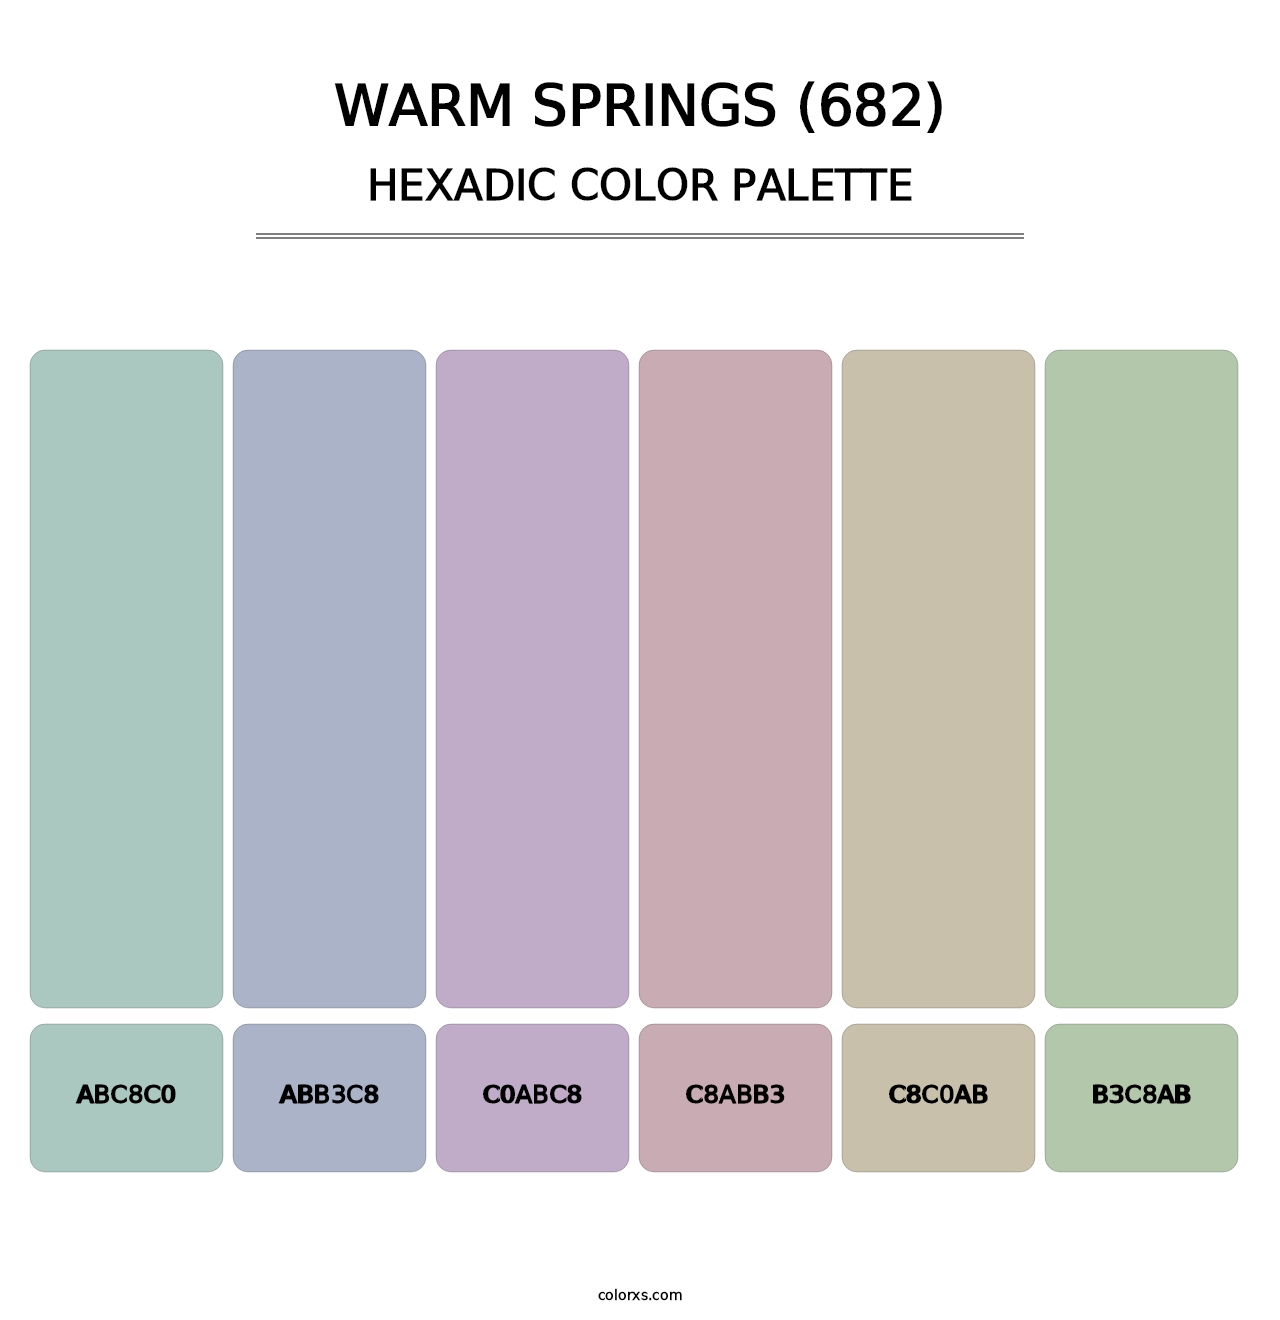 Warm Springs (682) - Hexadic Color Palette